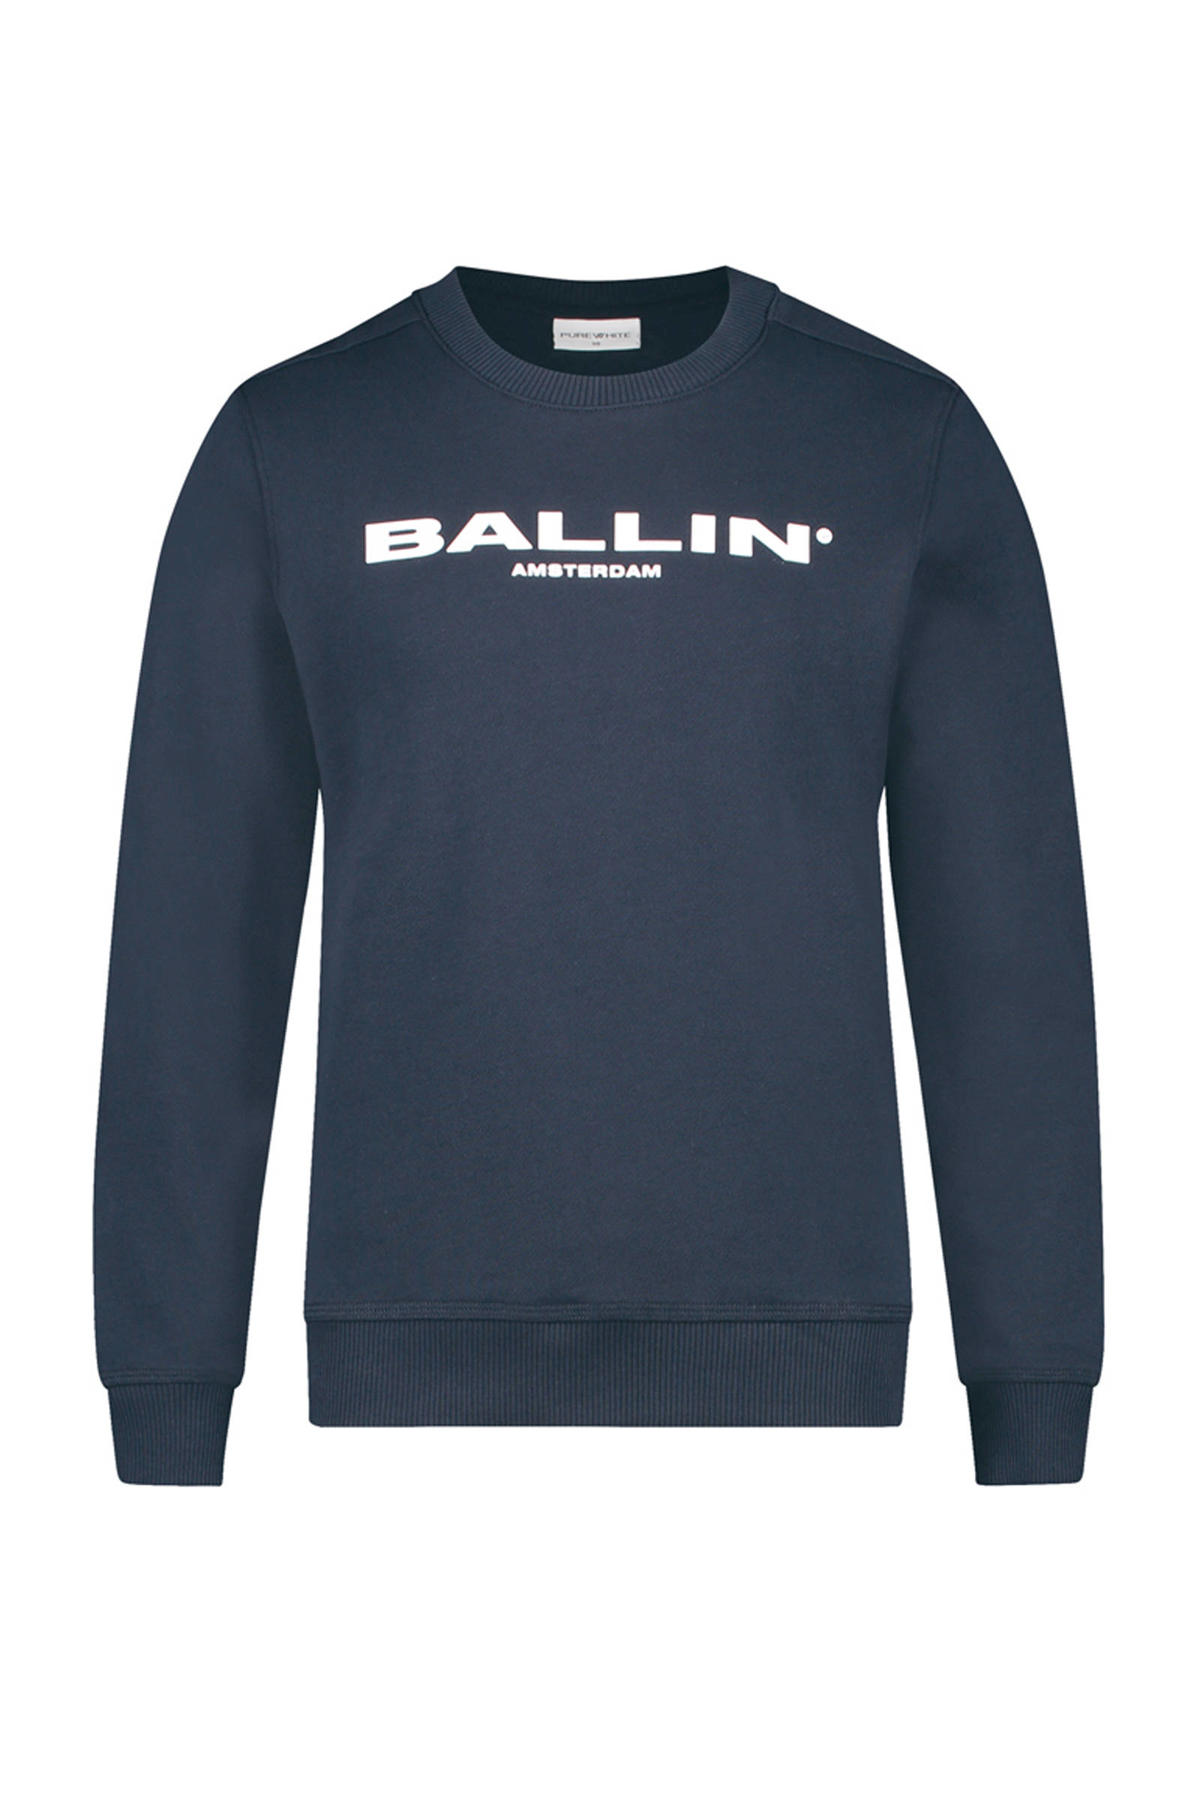 Boekwinkel insect Vrijwel Ballin unisex sweater met logo donkerblauw | kleertjes.com